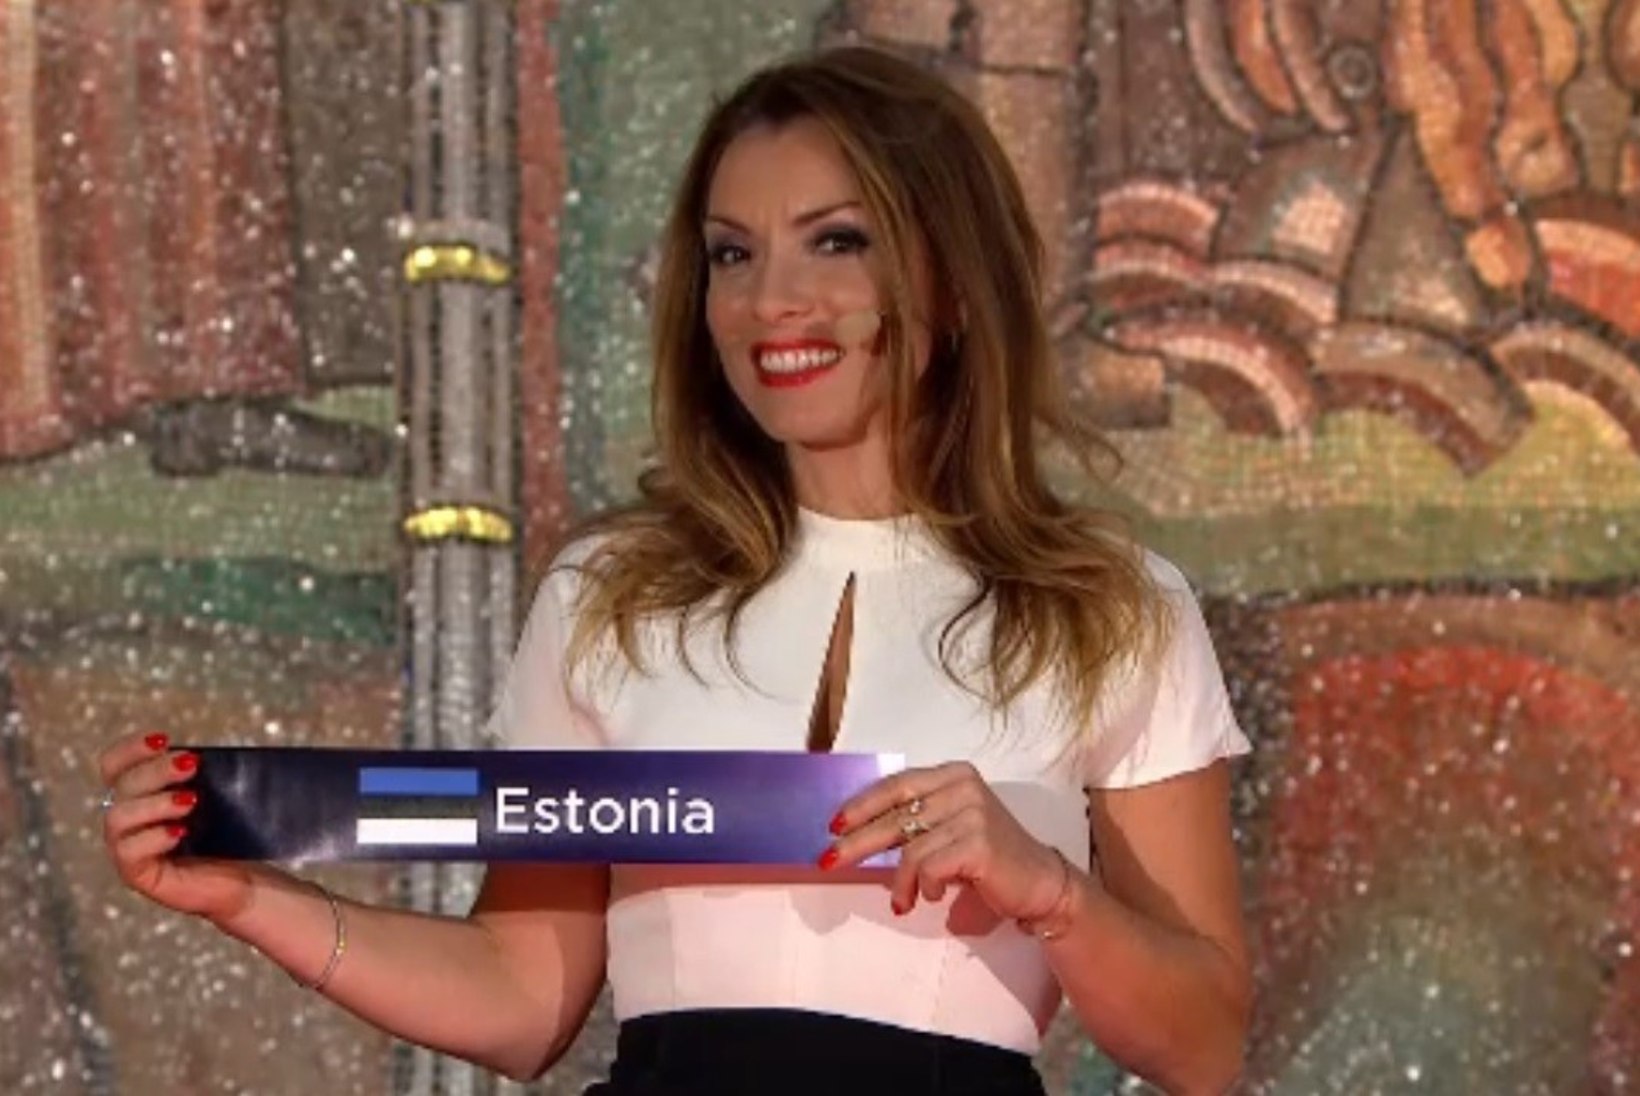 Eesti astub tänavu Eurovisioni lavale esimese poolfinaali teises pooles